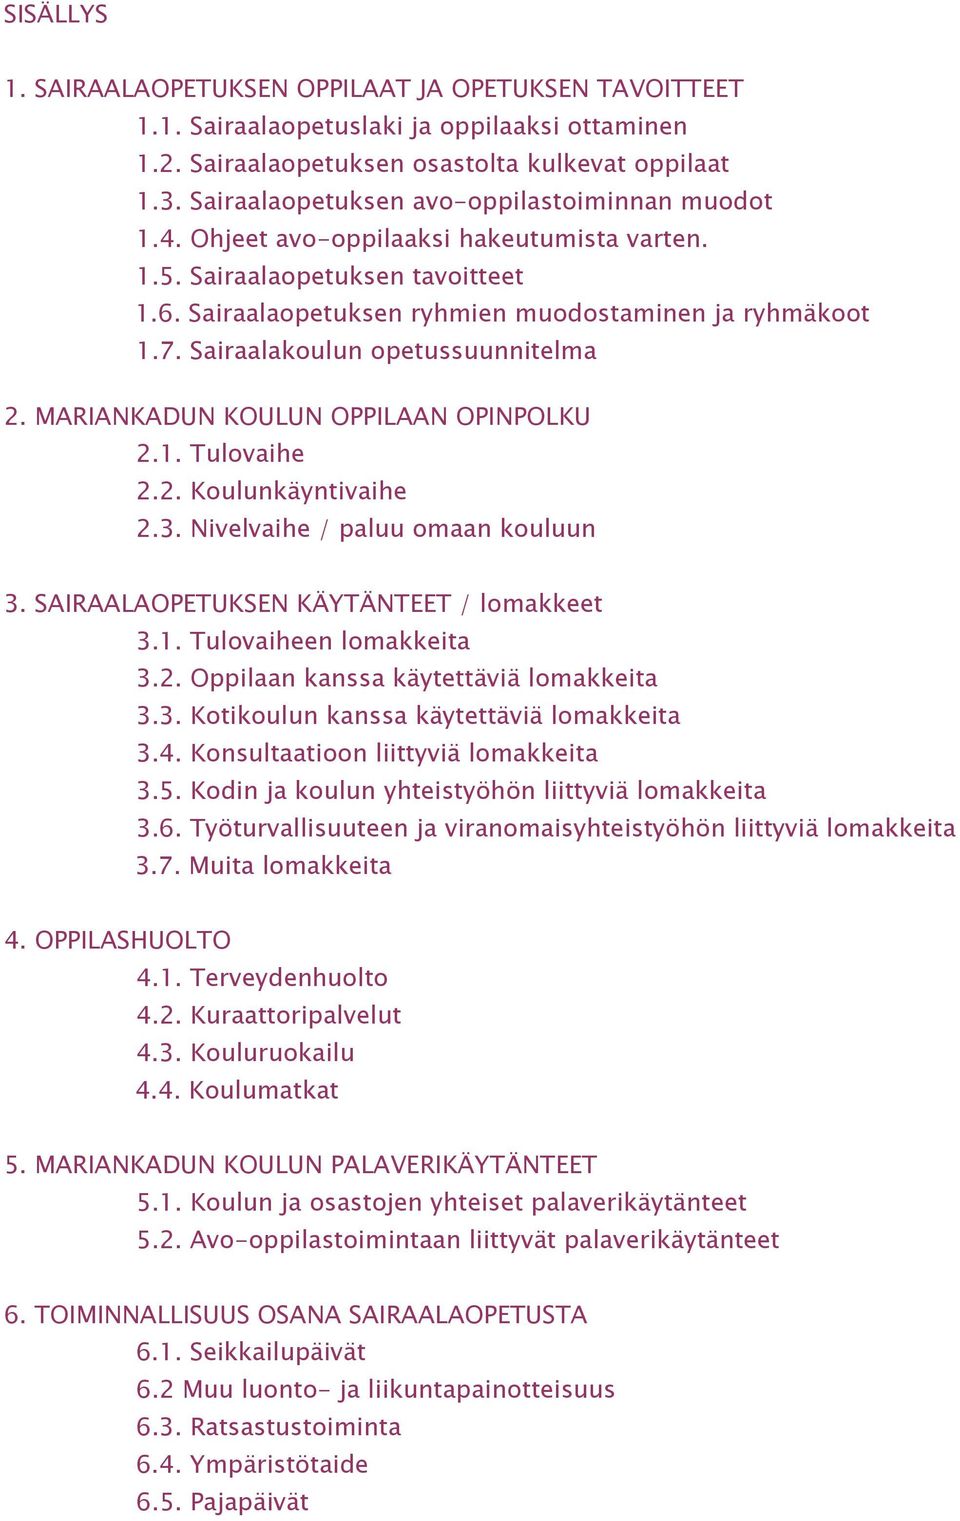 Sairaalakoulun opetussuunnitelma 2. MARIANKADUN KOULUN OPPILAAN OPINPOLKU 2.1. Tulovaihe 2.2. Koulunkäyntivaihe 2.3. Nivelvaihe / paluu omaan kouluun 3. SAIRAALAOPETUKSEN KÄYTÄNTEET / lomakkeet 3.1. Tulovaiheen lomakkeita 3.